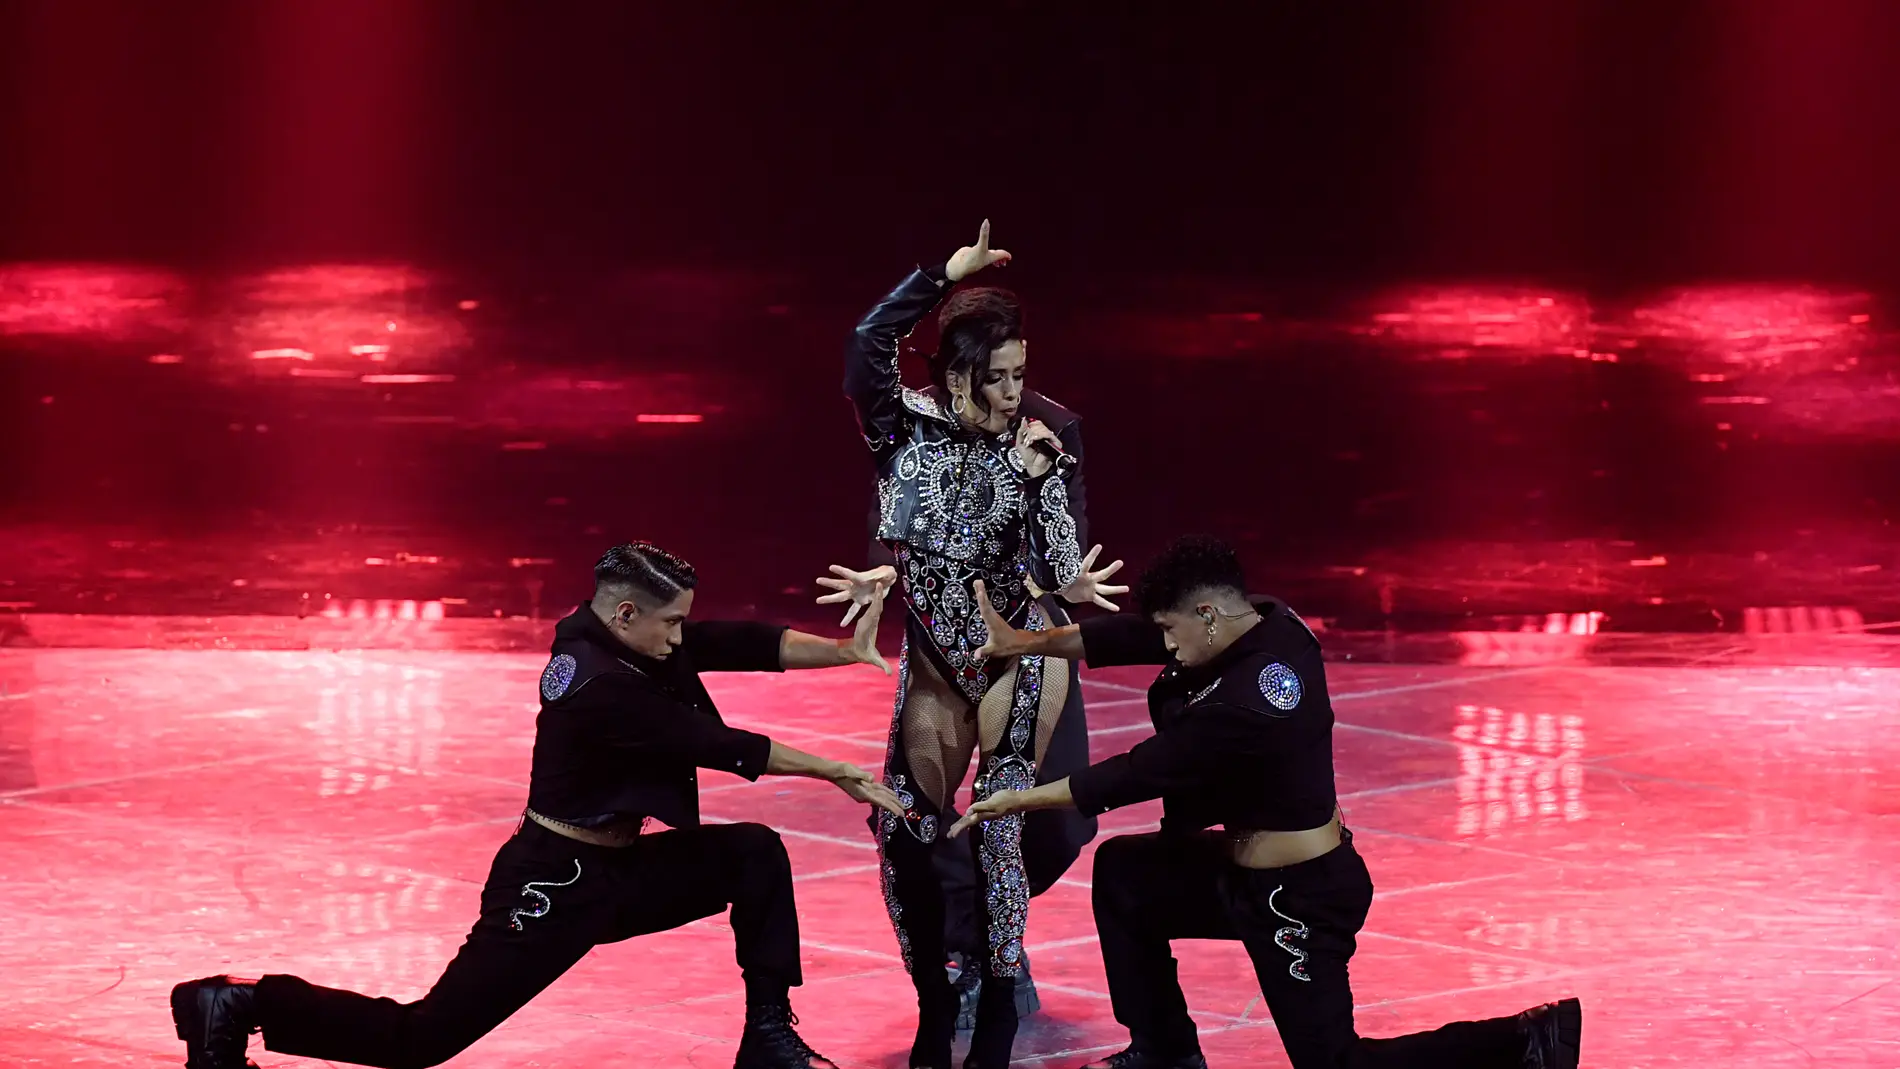 Cuánto costó el traje de Palomo Spain que llevó Chanel en Eurovisión? |  Europa FM